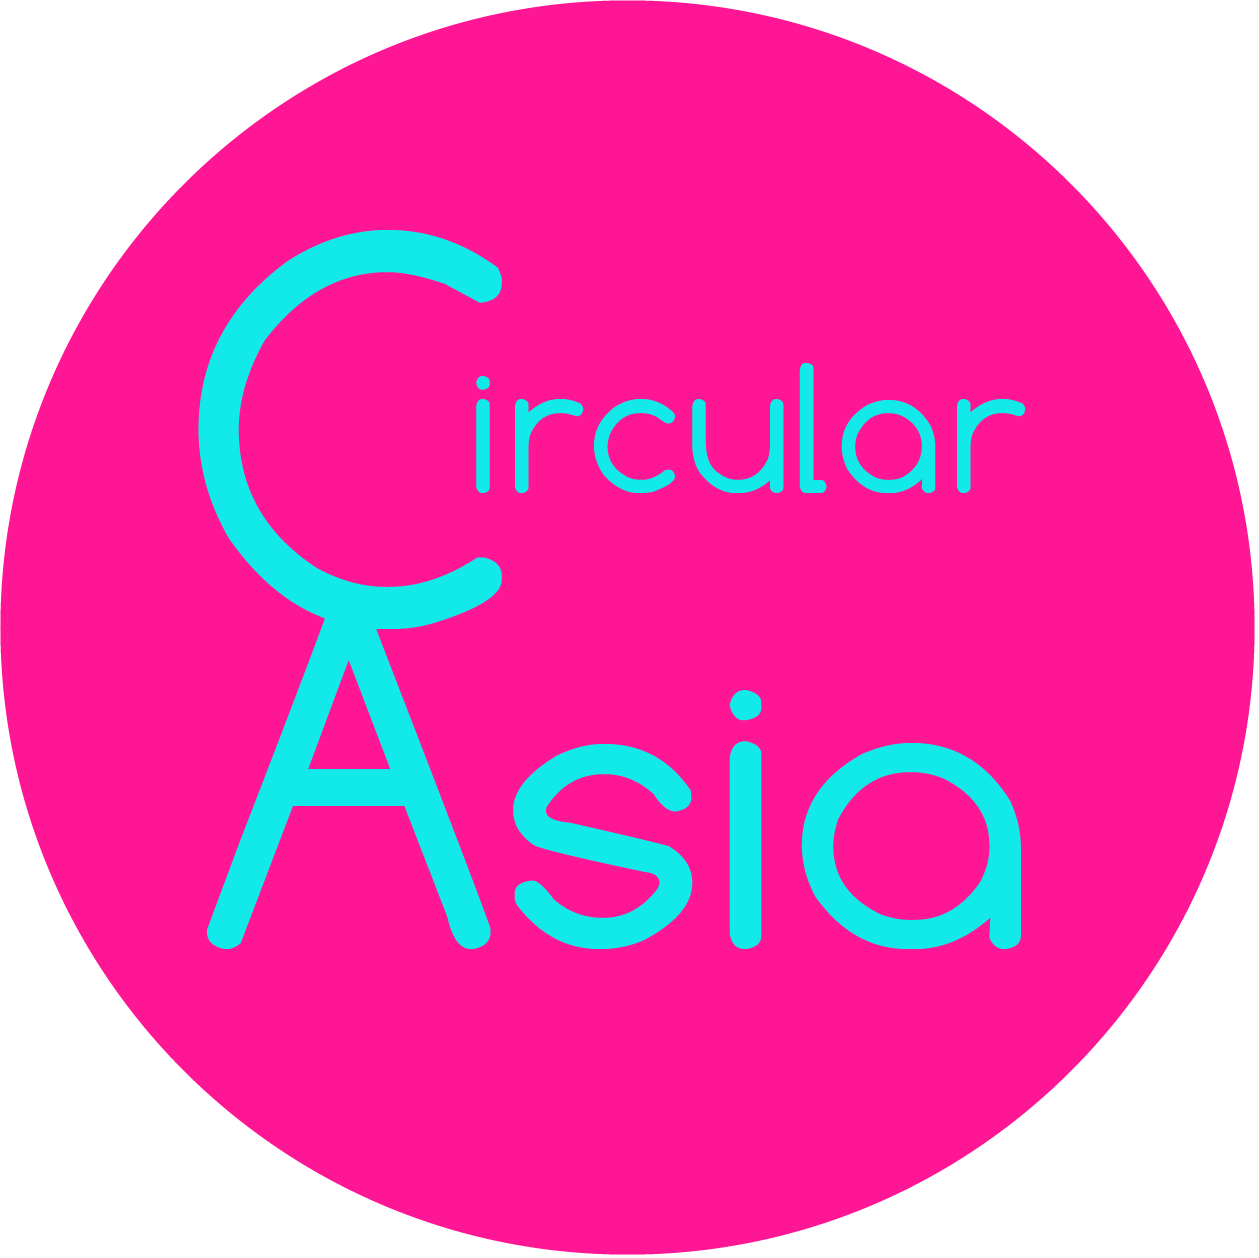 Circular Asia Association